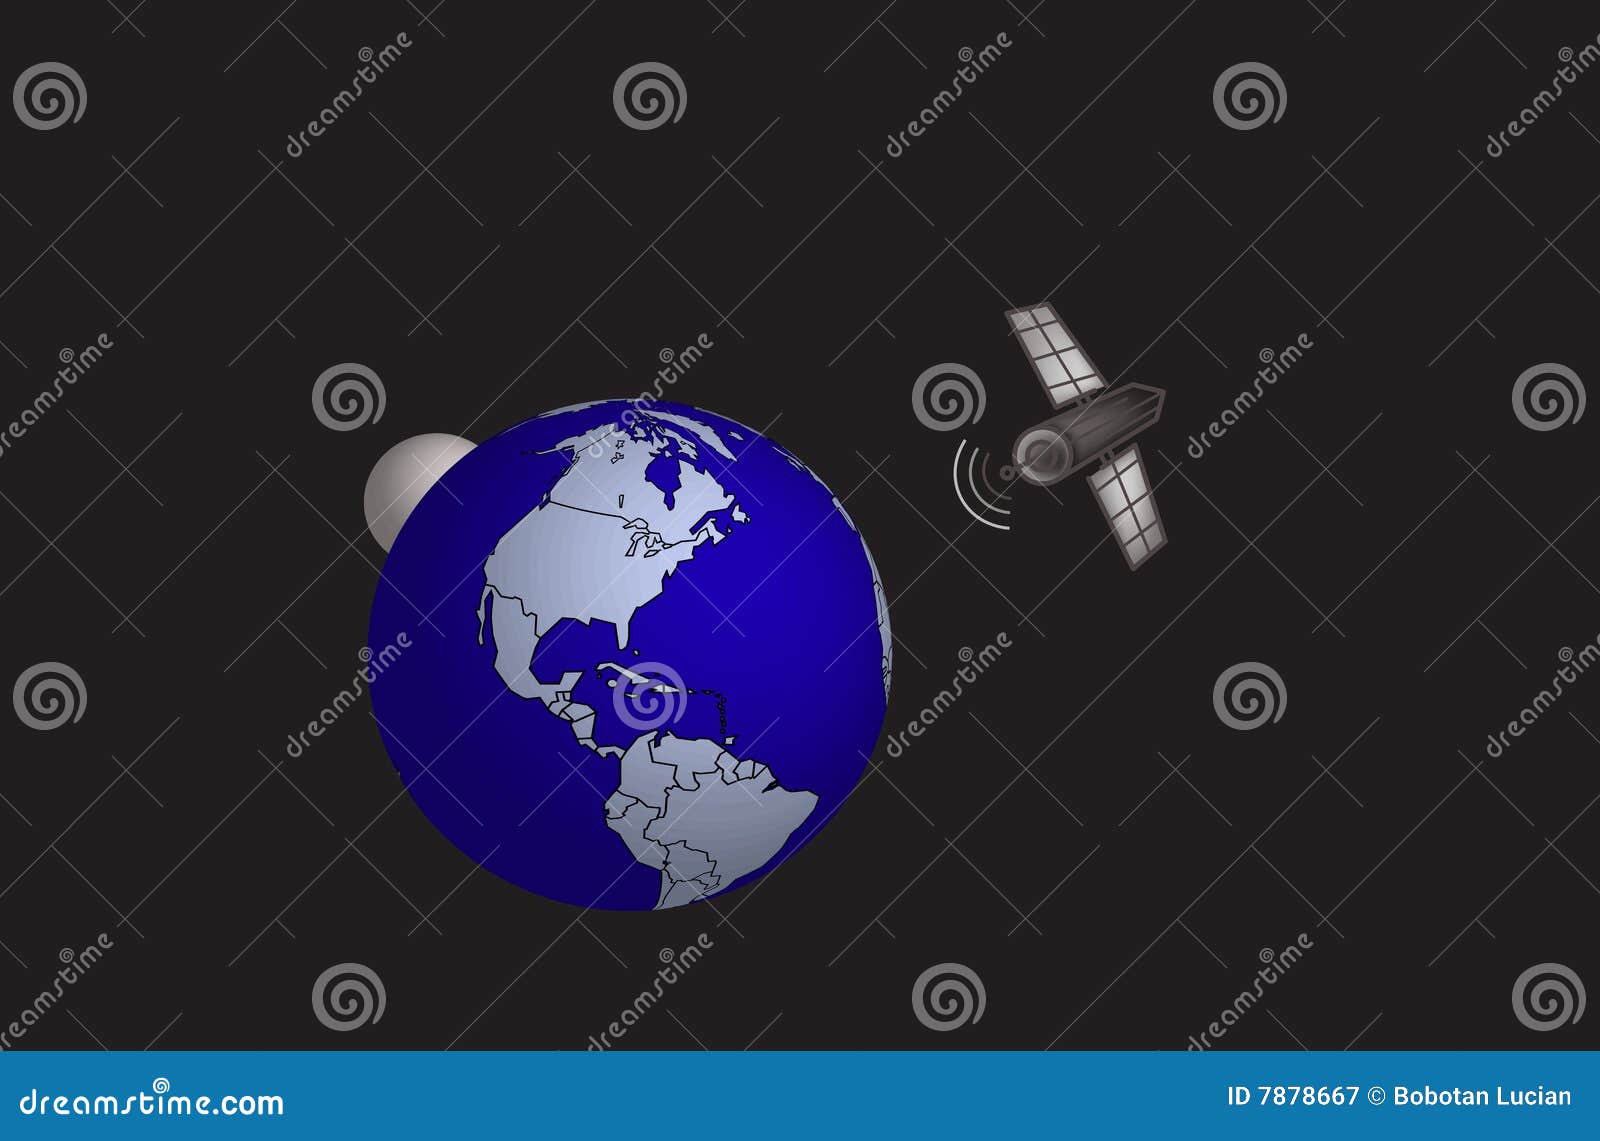 satelite and world